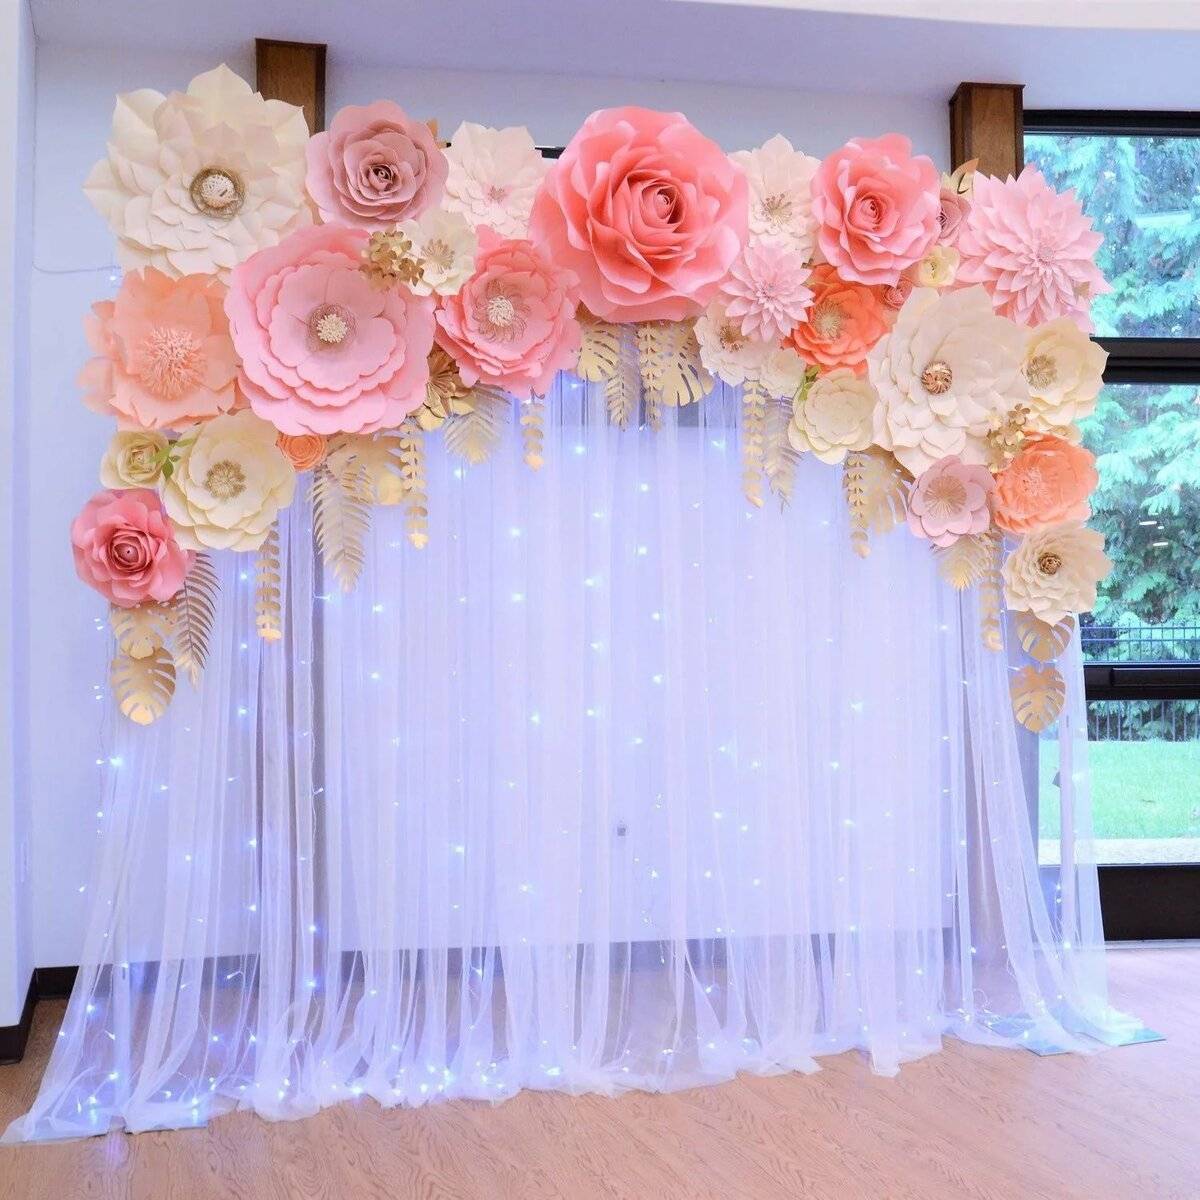 Цветы на свадьбу из бумаги - идеи оформления, как сделать своими руками, видео